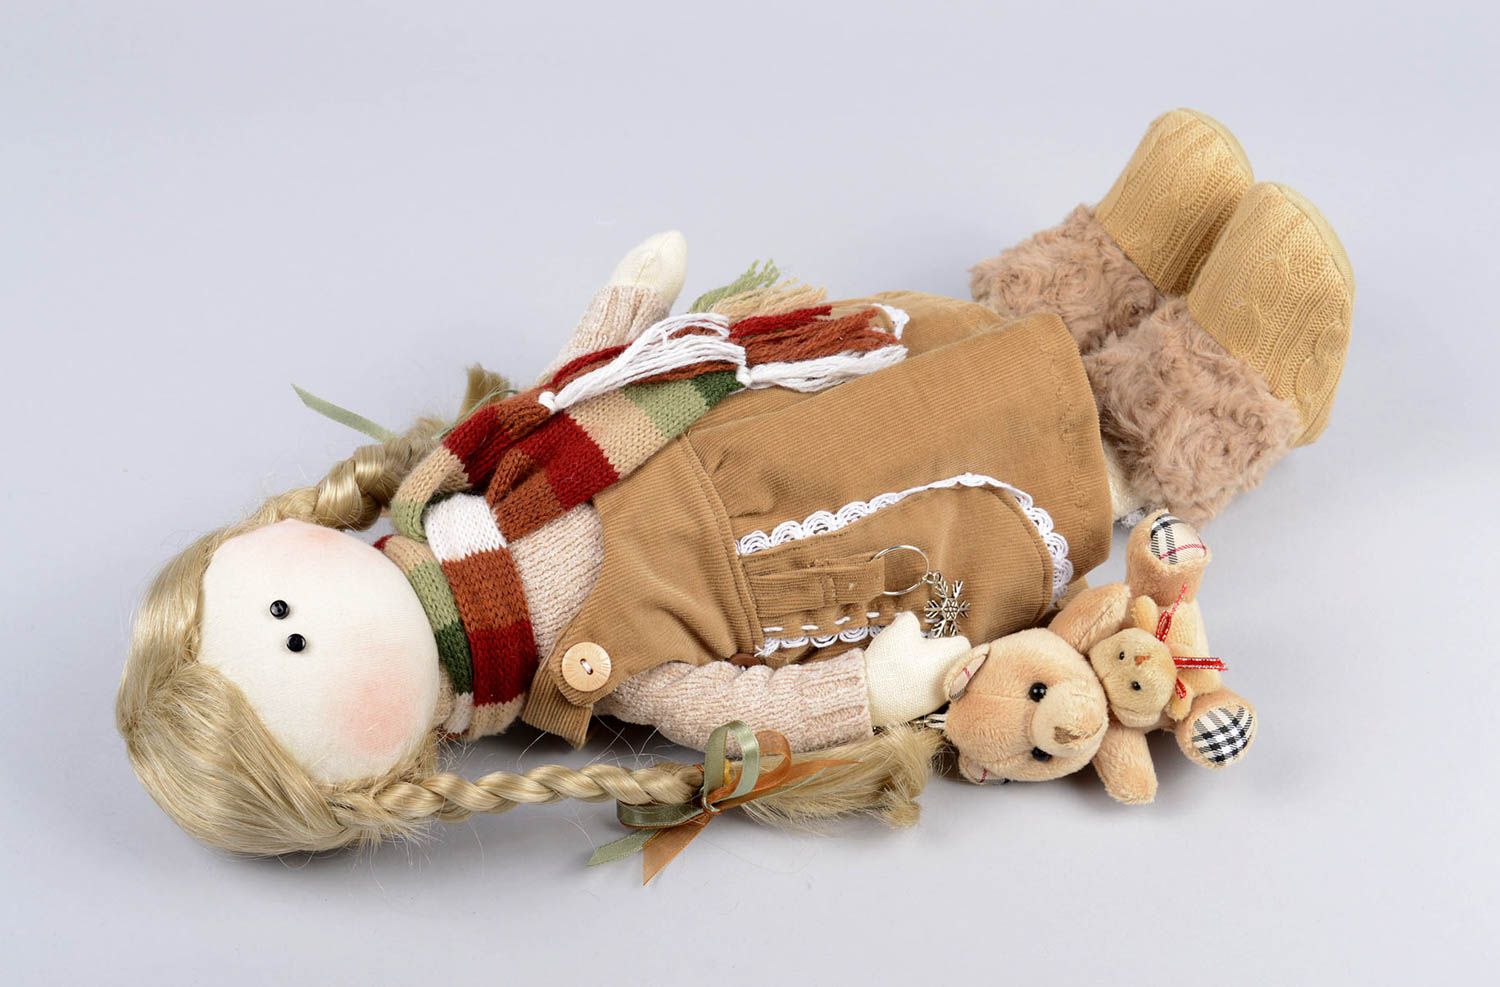 Handmade soft doll toys for kids girl doll presents for children home decor photo 4